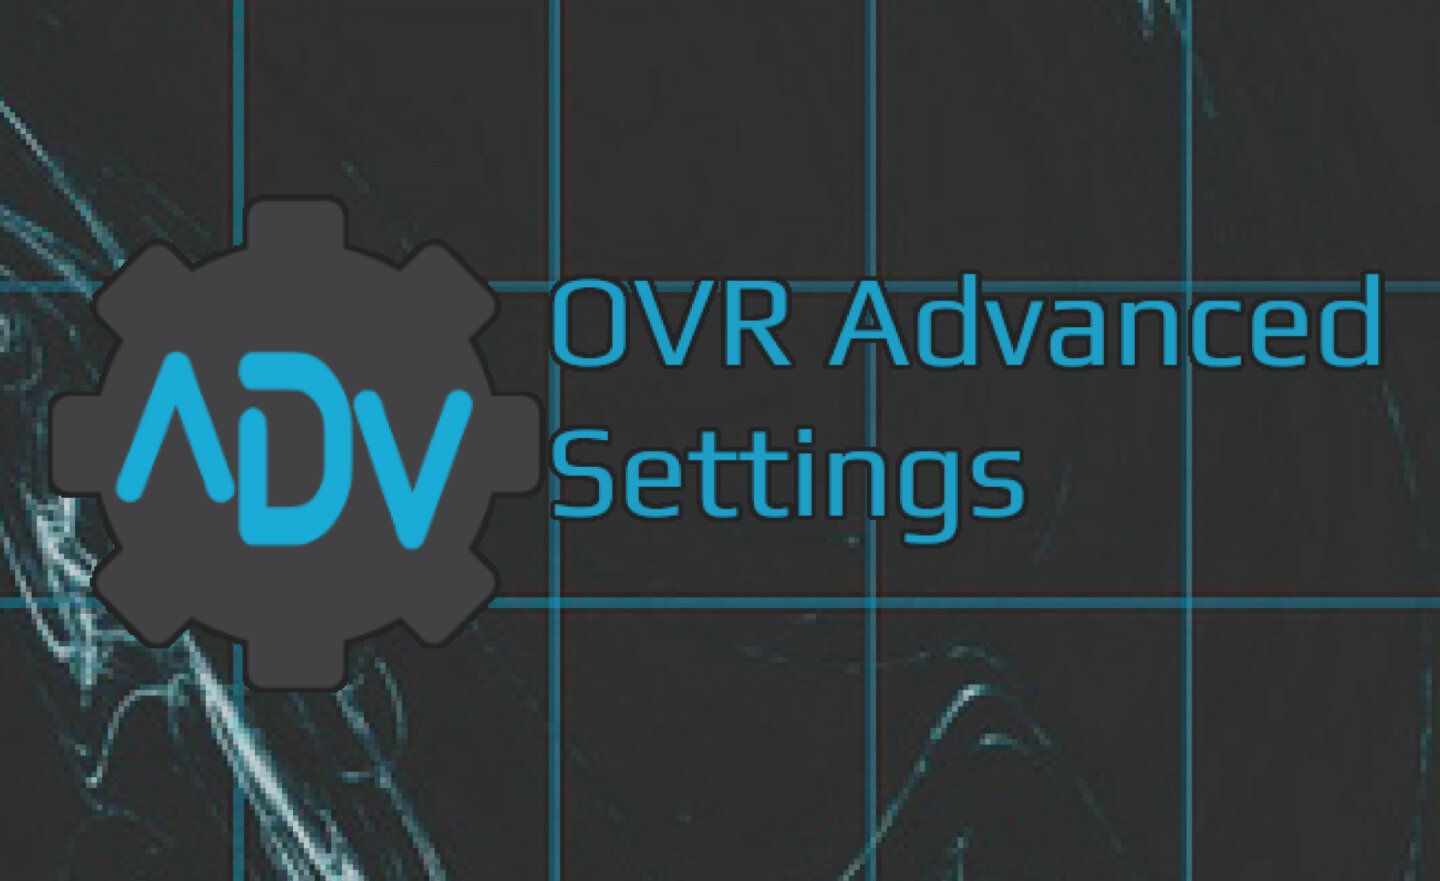 【限時免費】Steam 放送 VR 工具《OVR Advanced Settings》，4 月 14 日前永久保留